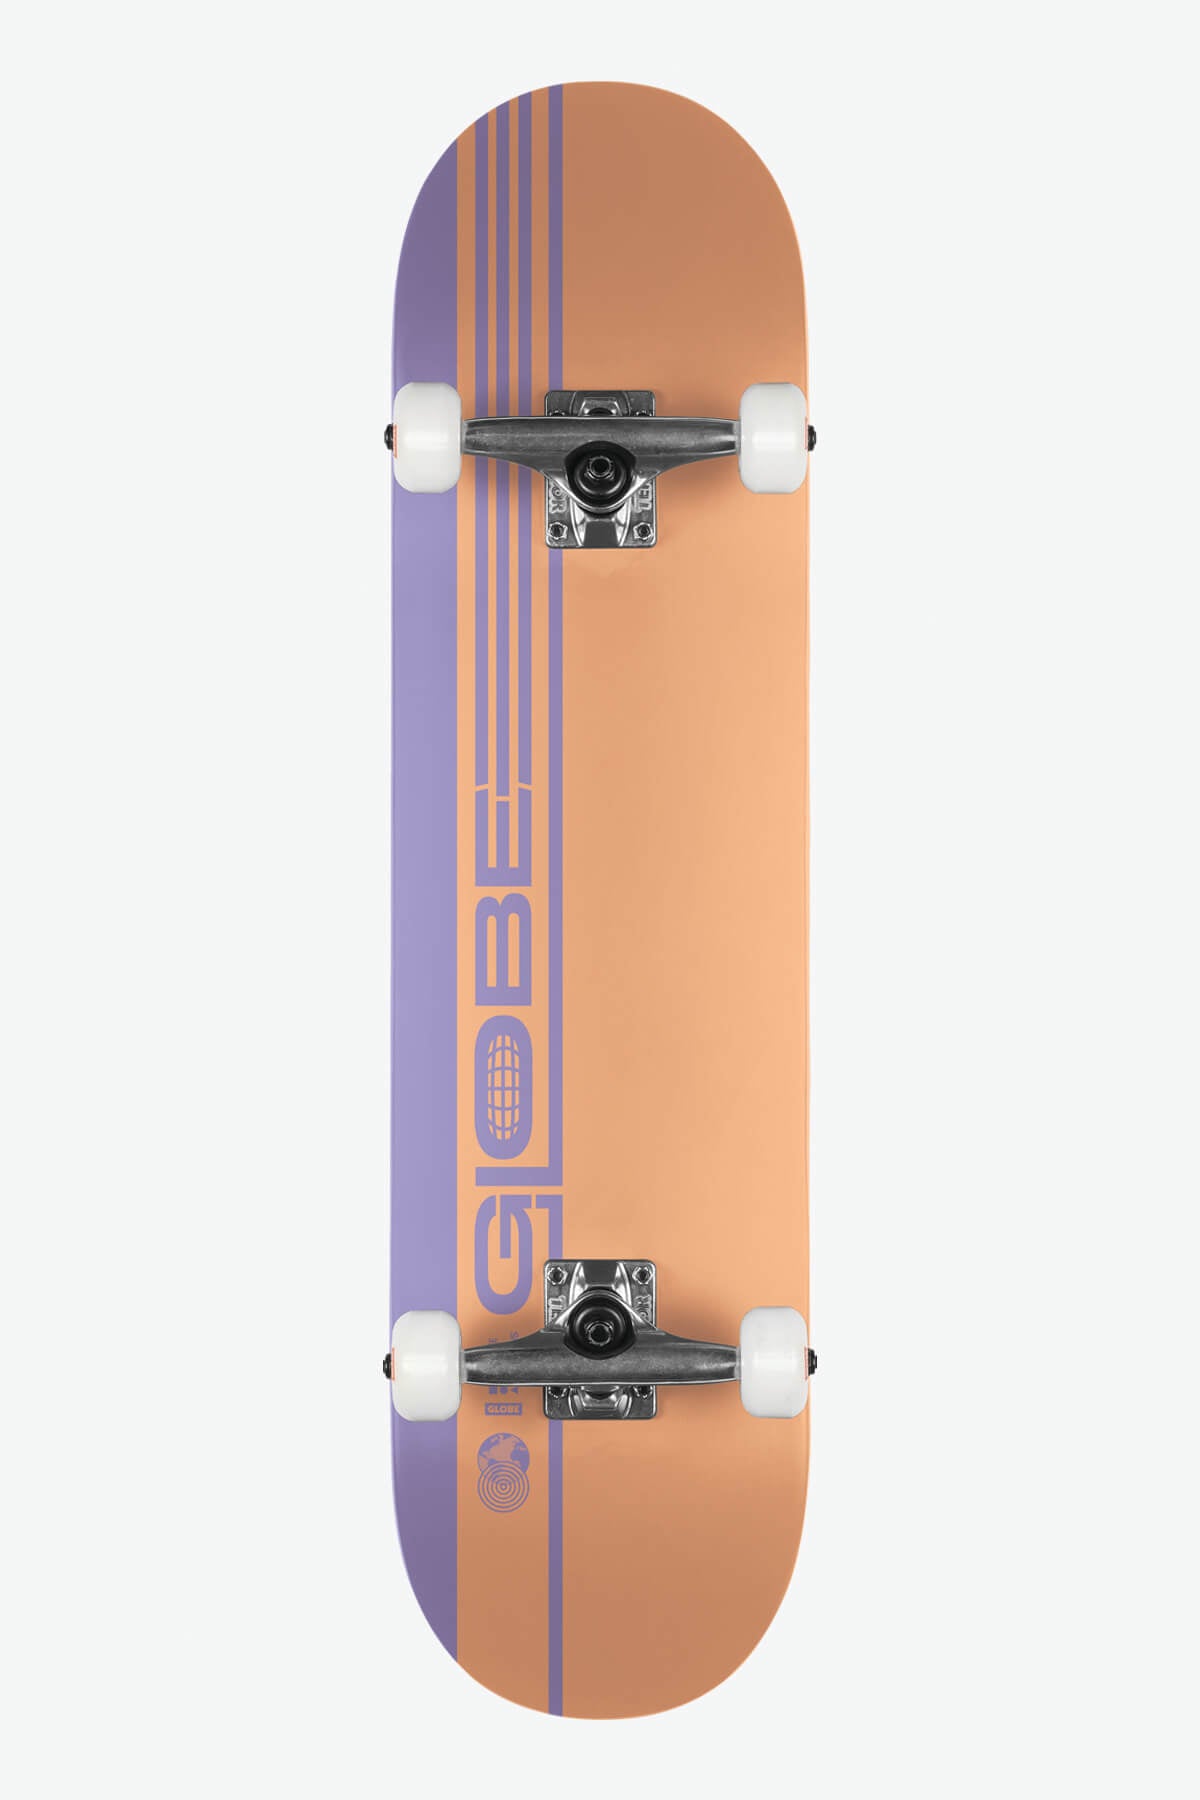 Globe - G0 Strype Duro - Naranja Polvoriento/Lavanda - 7,75" Completo Skateboard